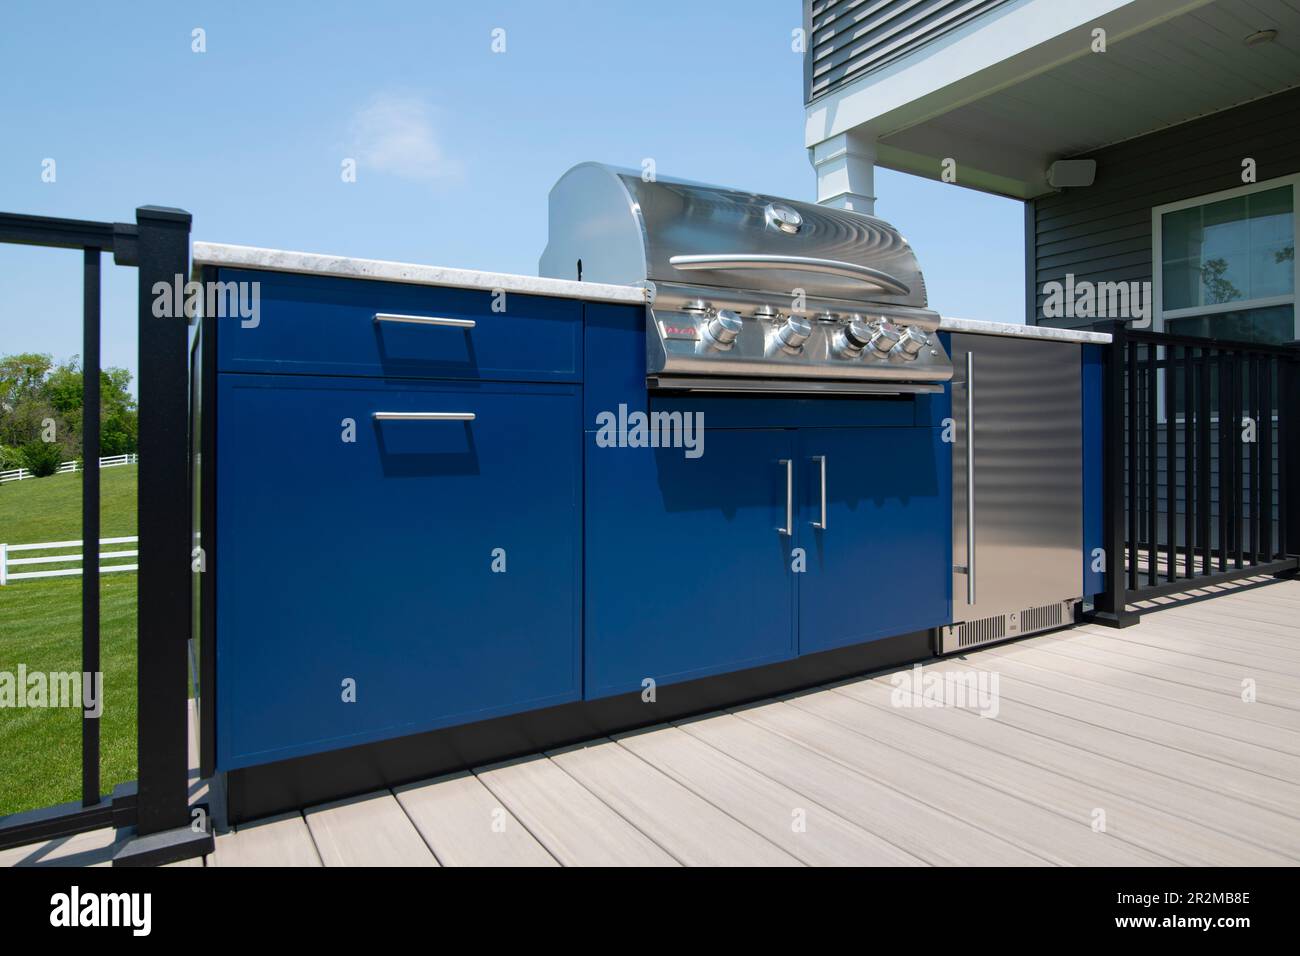 Une cuisine extérieure avec grill à gaz et réfrigérateur sur une terrasse dans le Maryland aux États-Unis Banque D'Images